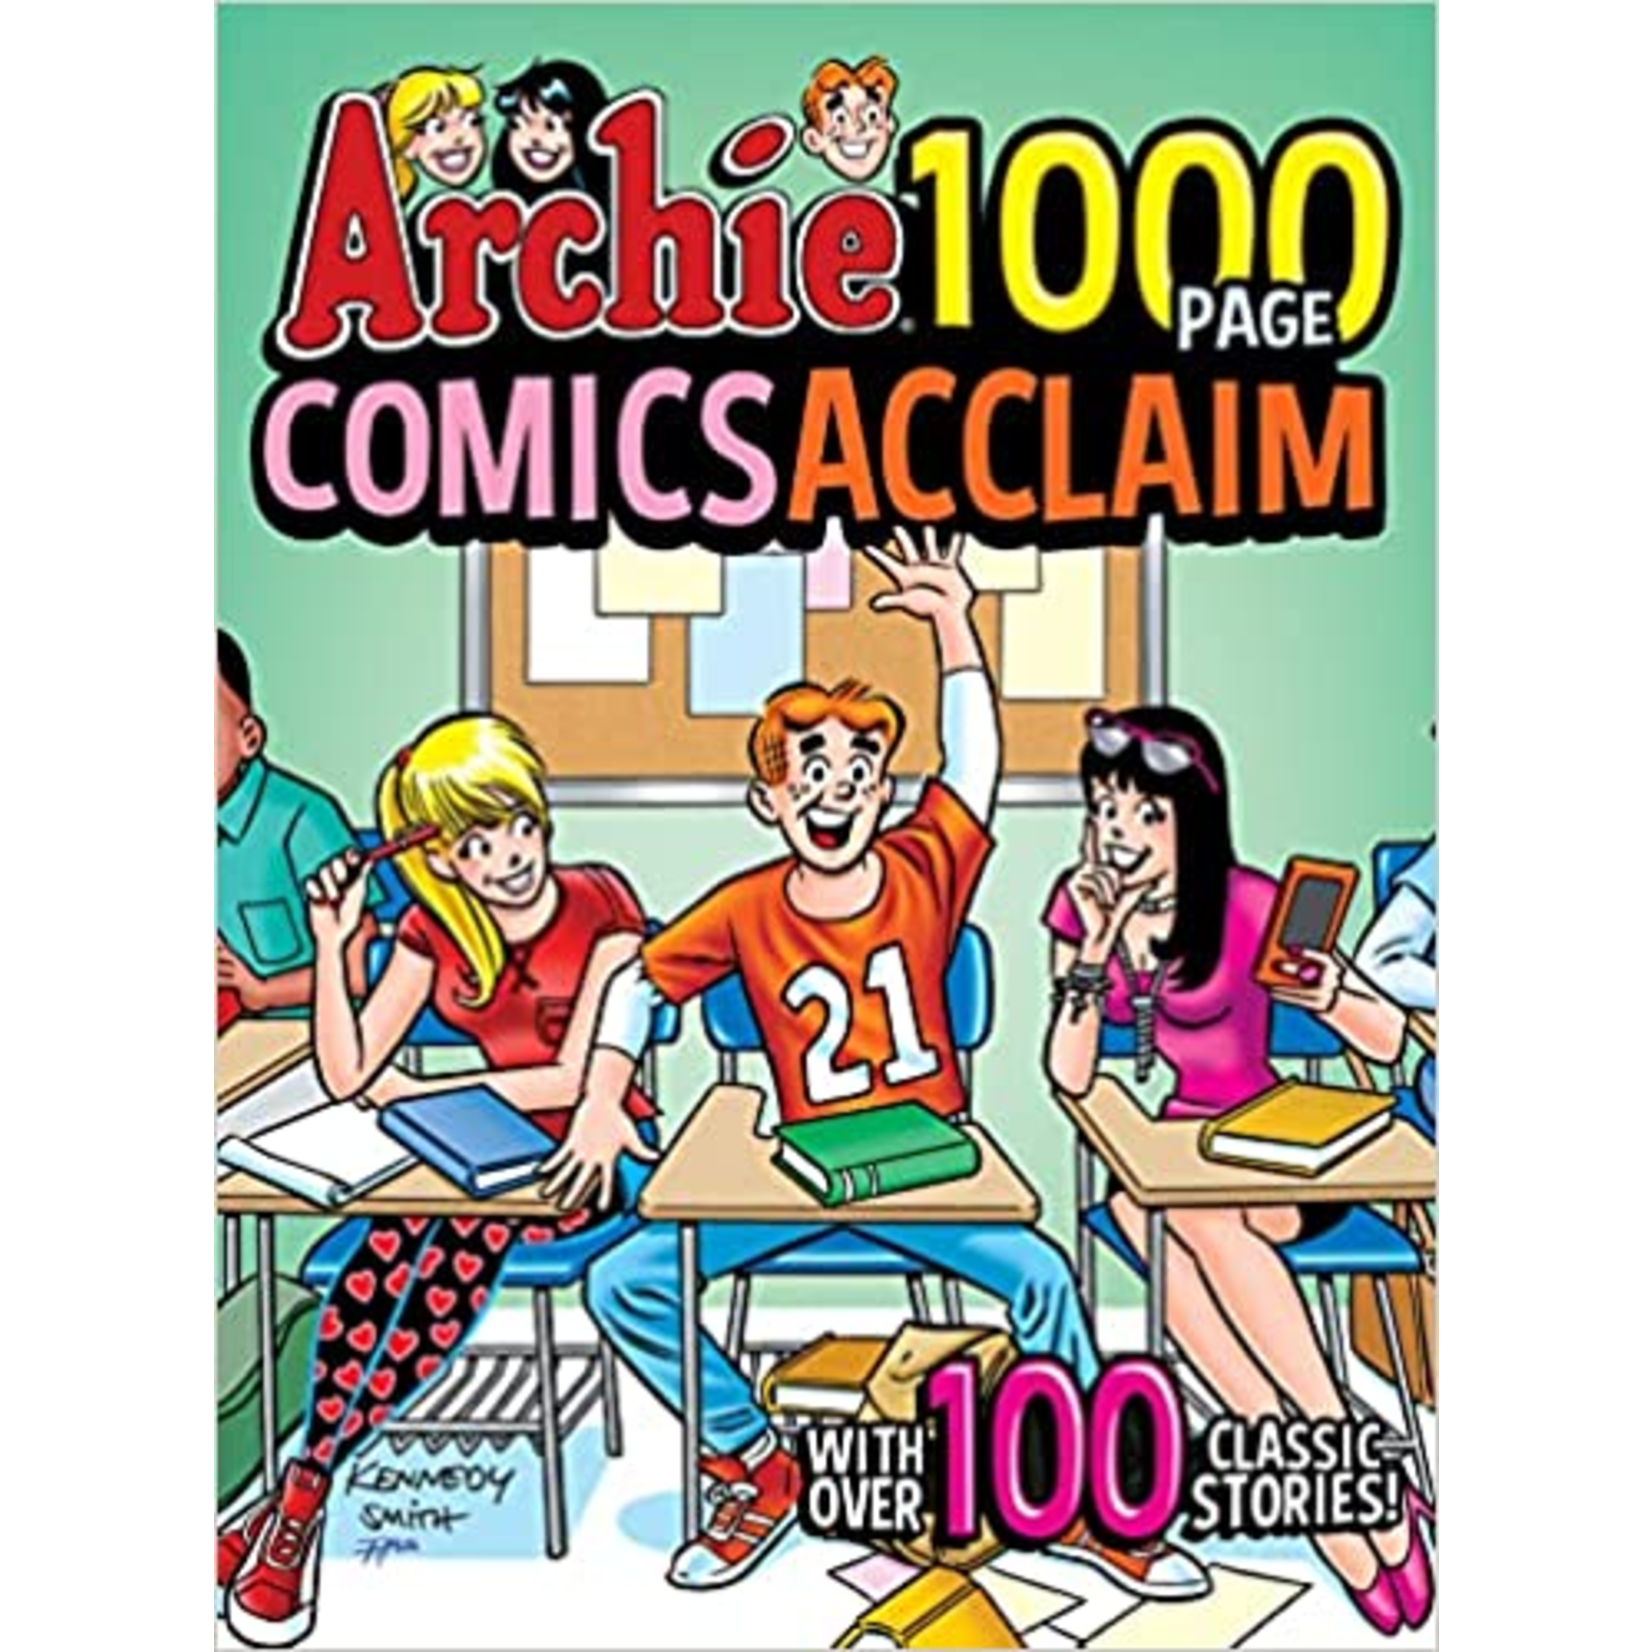 ARCHIE COMIC PUBLICATIONS Archie 1000 Page Comics Acclaim